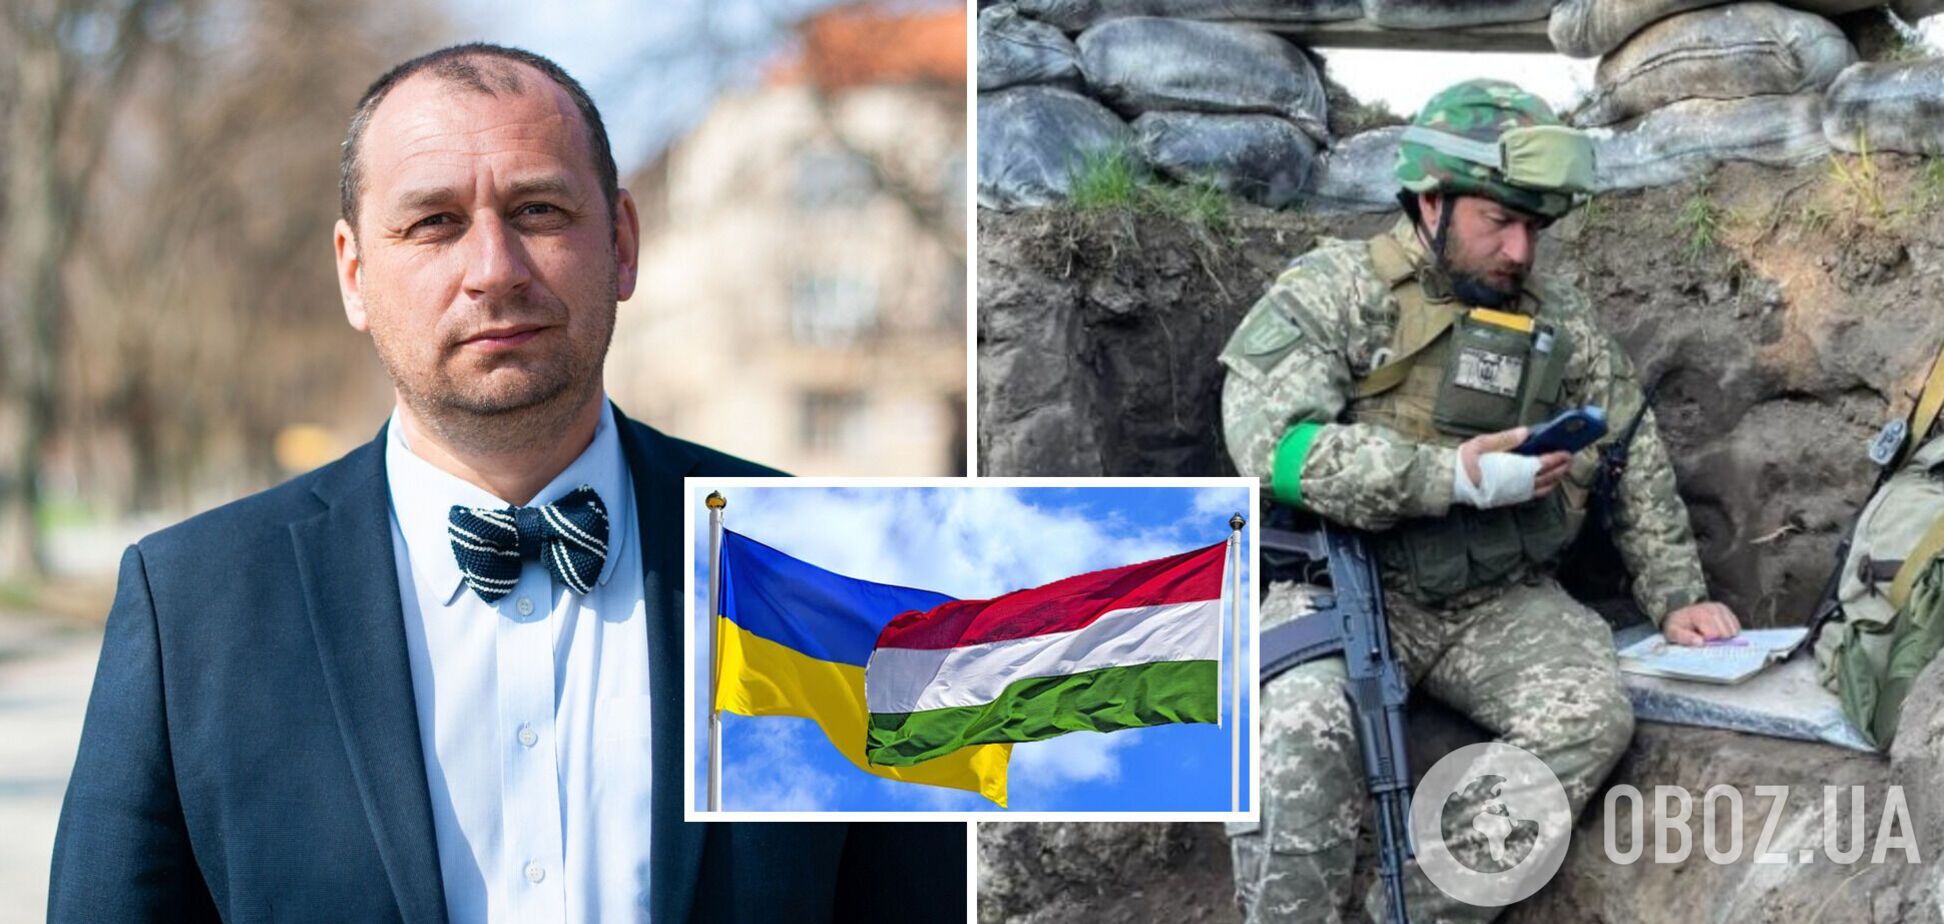 Послом України в Угорщині може стати 'професор з окопів' Федір Шандор, фото якого на передовій сколихнуло мережу